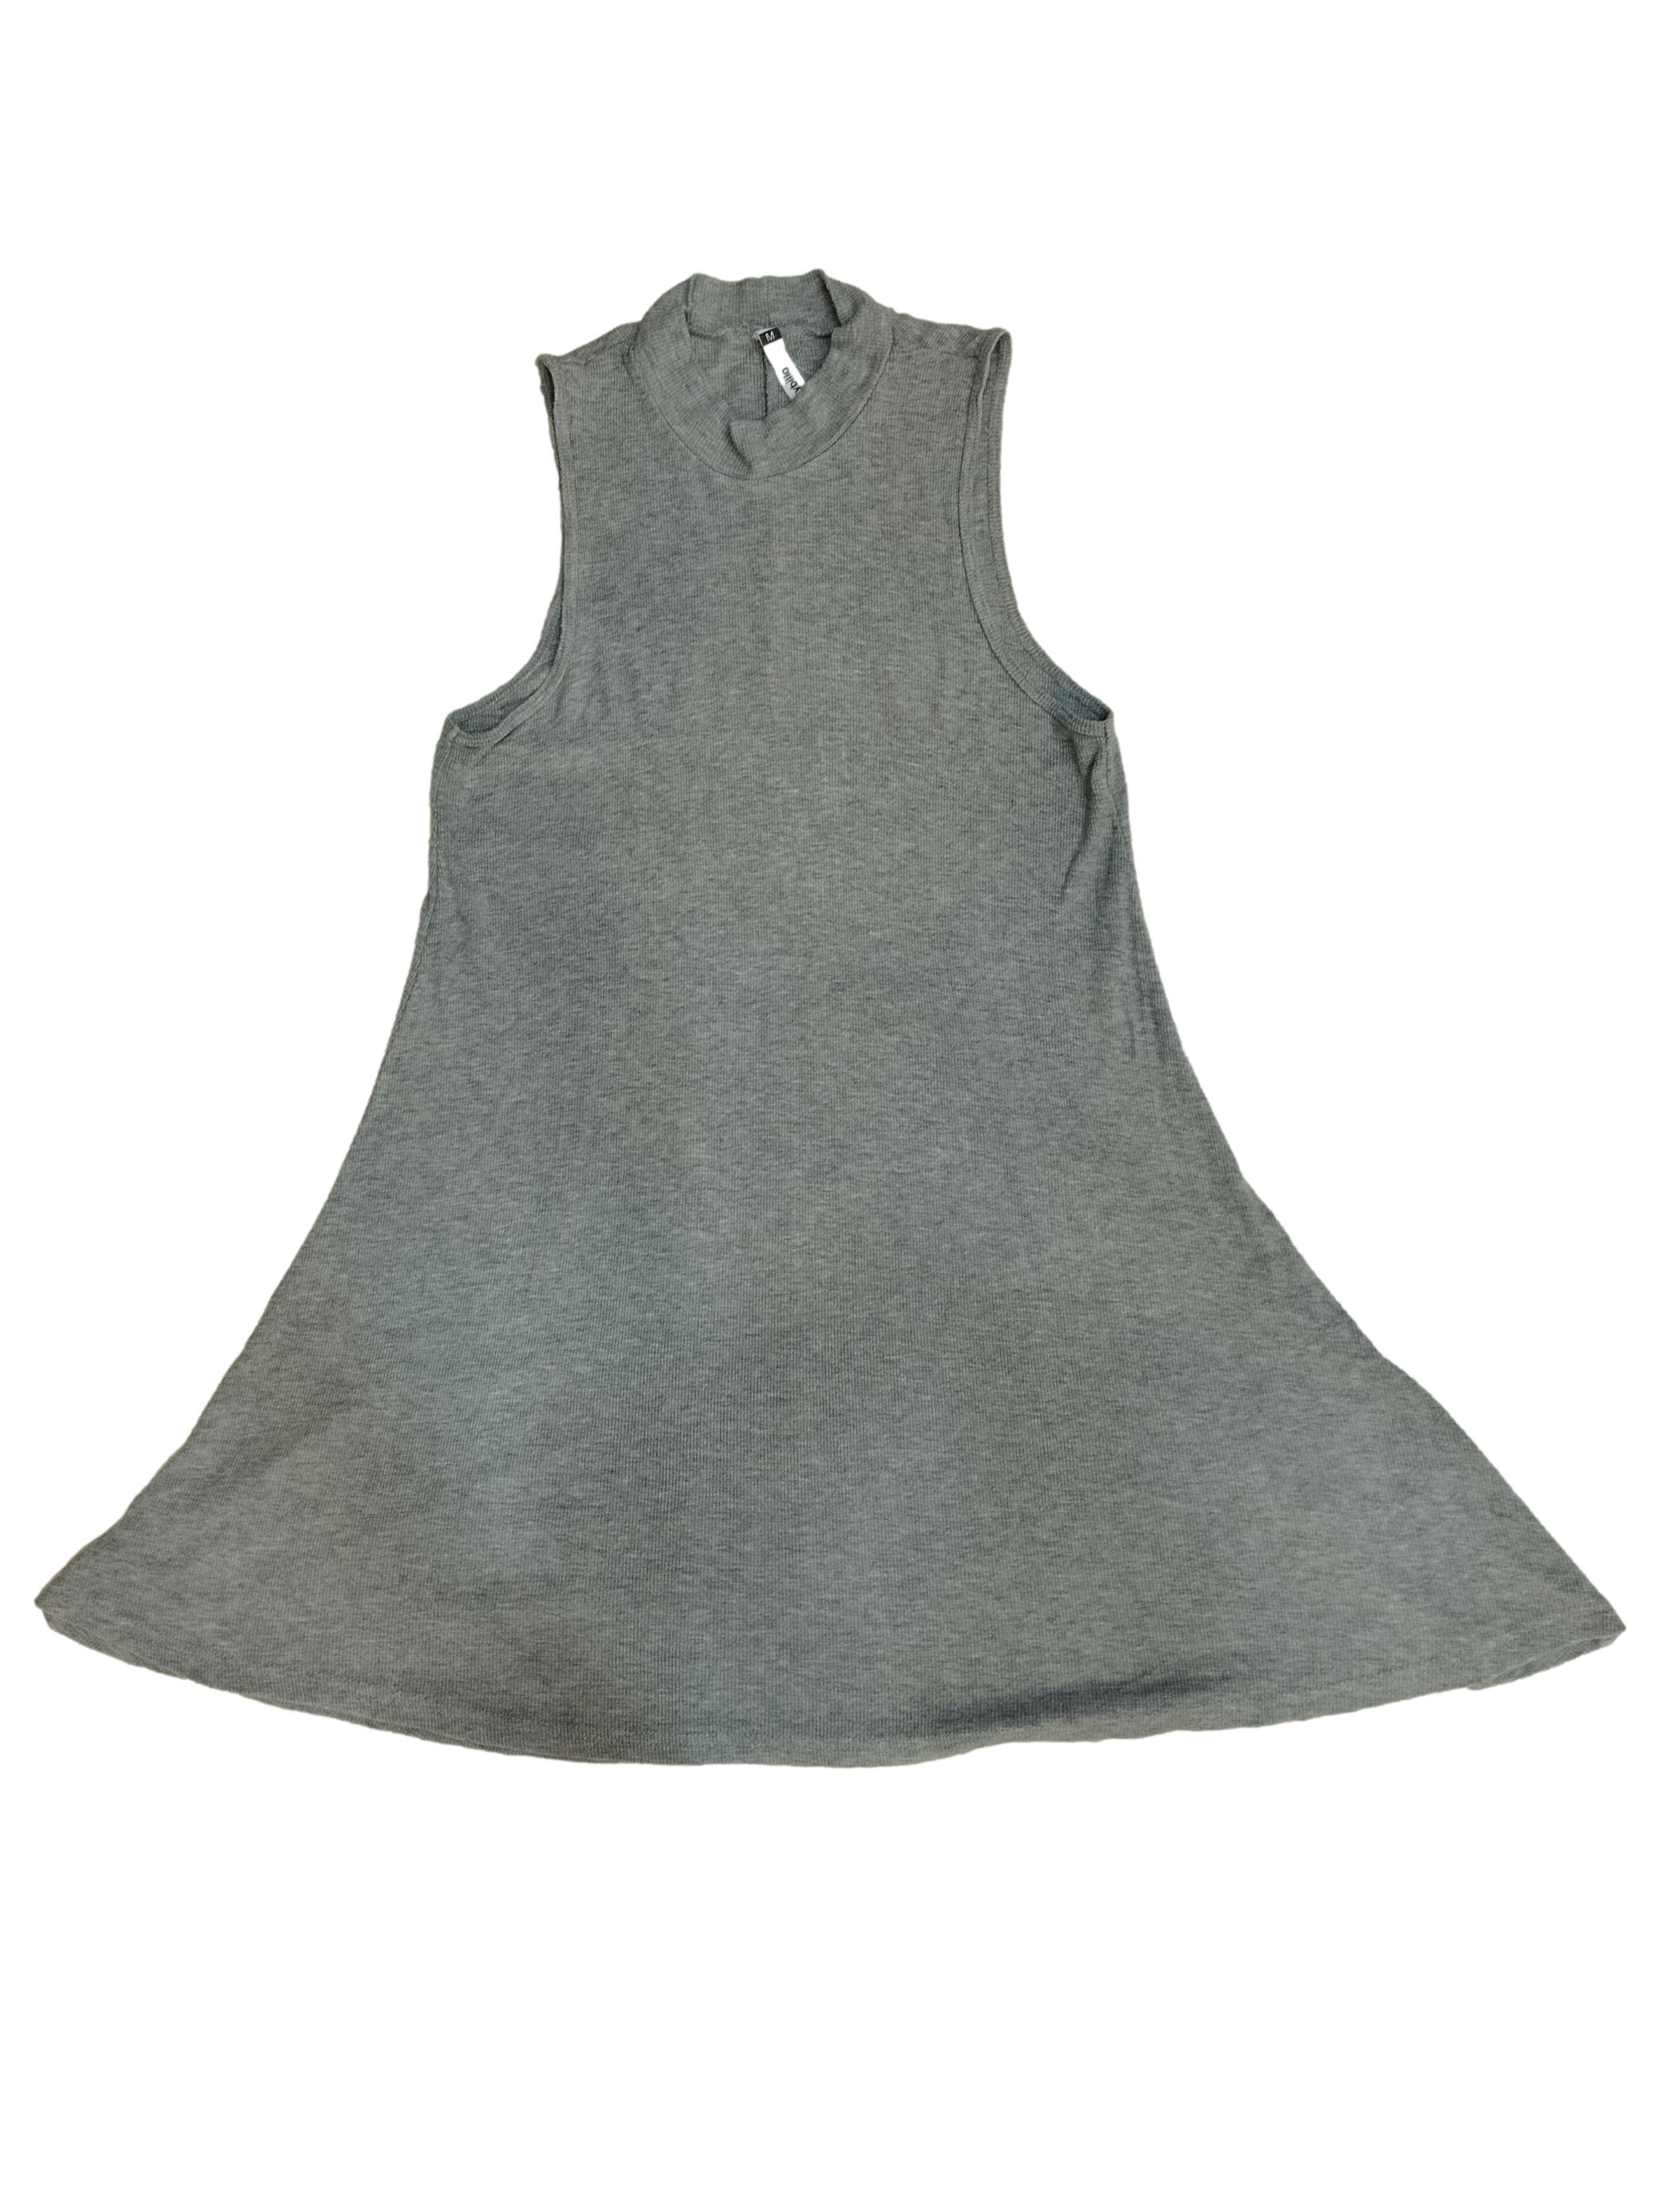 Vestido Sybilla gris,tejido acanalado, manga cero, stretch. Busto: 84 cm, Largo: 86 cm